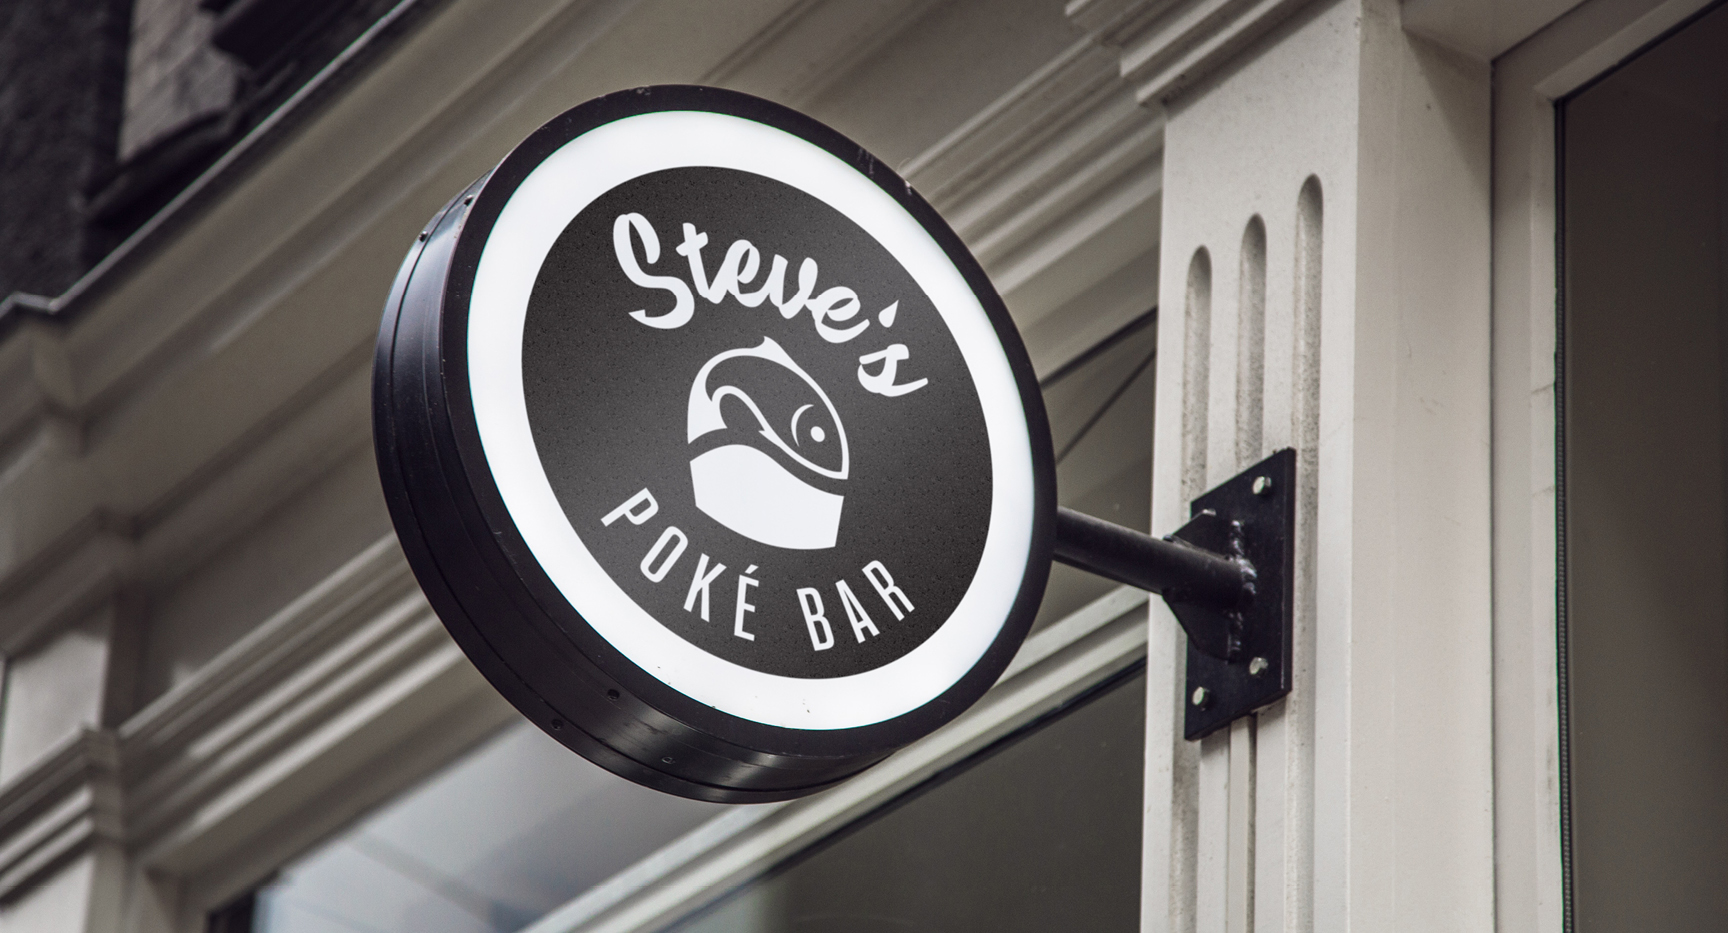 Steve's Poké Bar • MD Creative